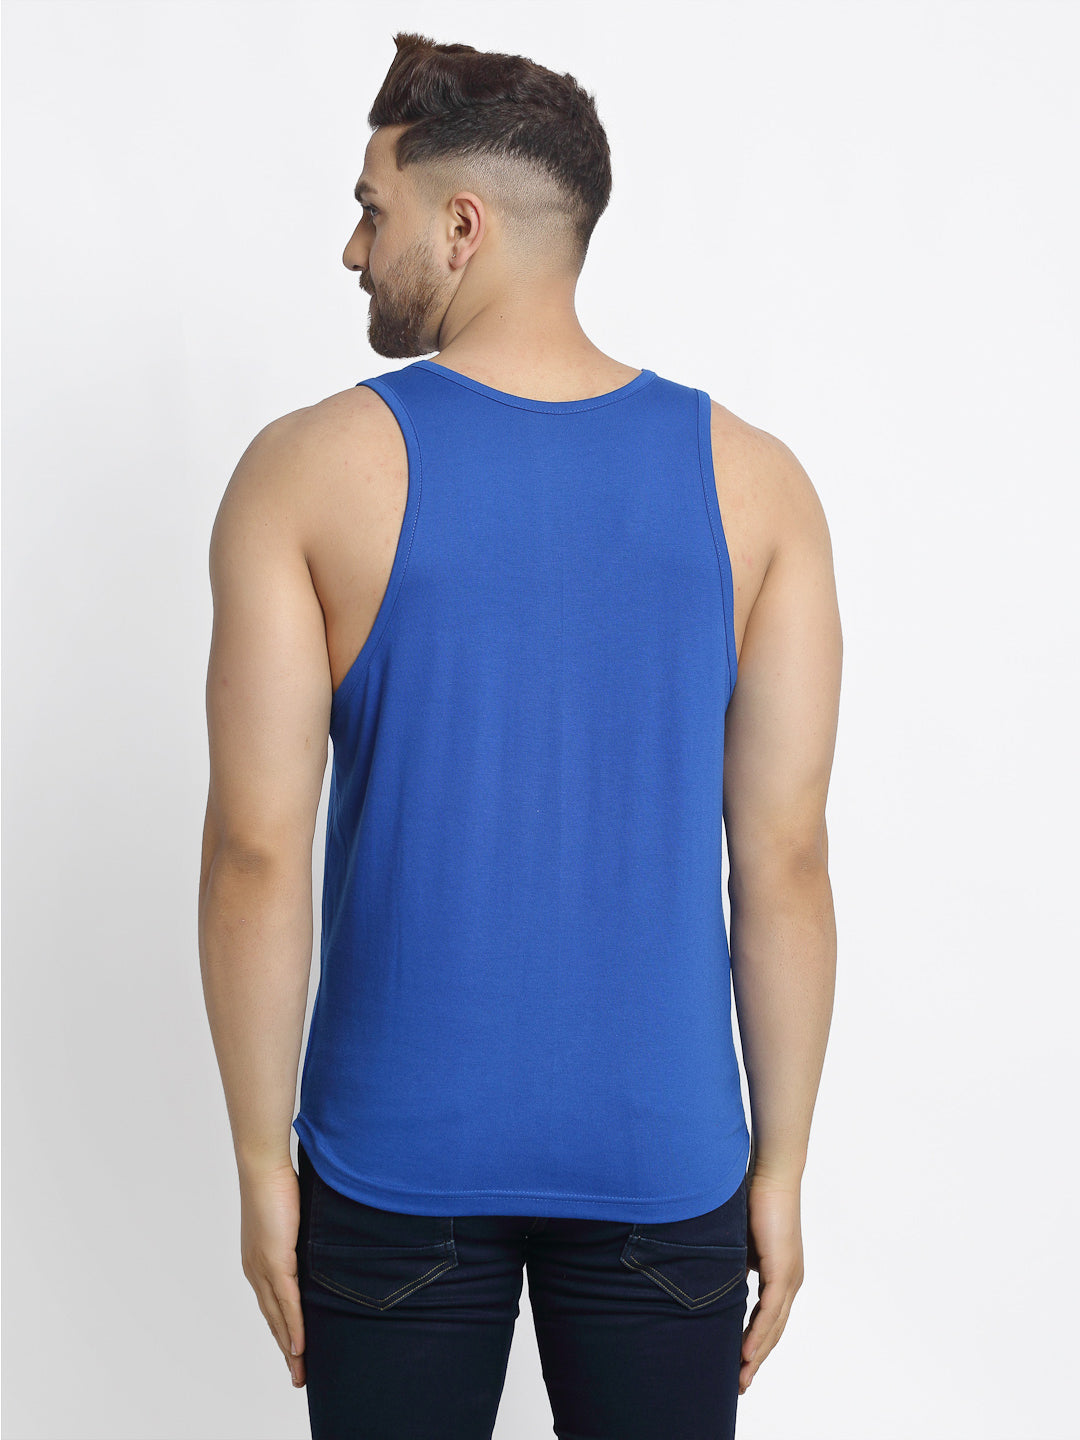 Men's Pack of 2 White & Blue Printed Gym vest - Friskers